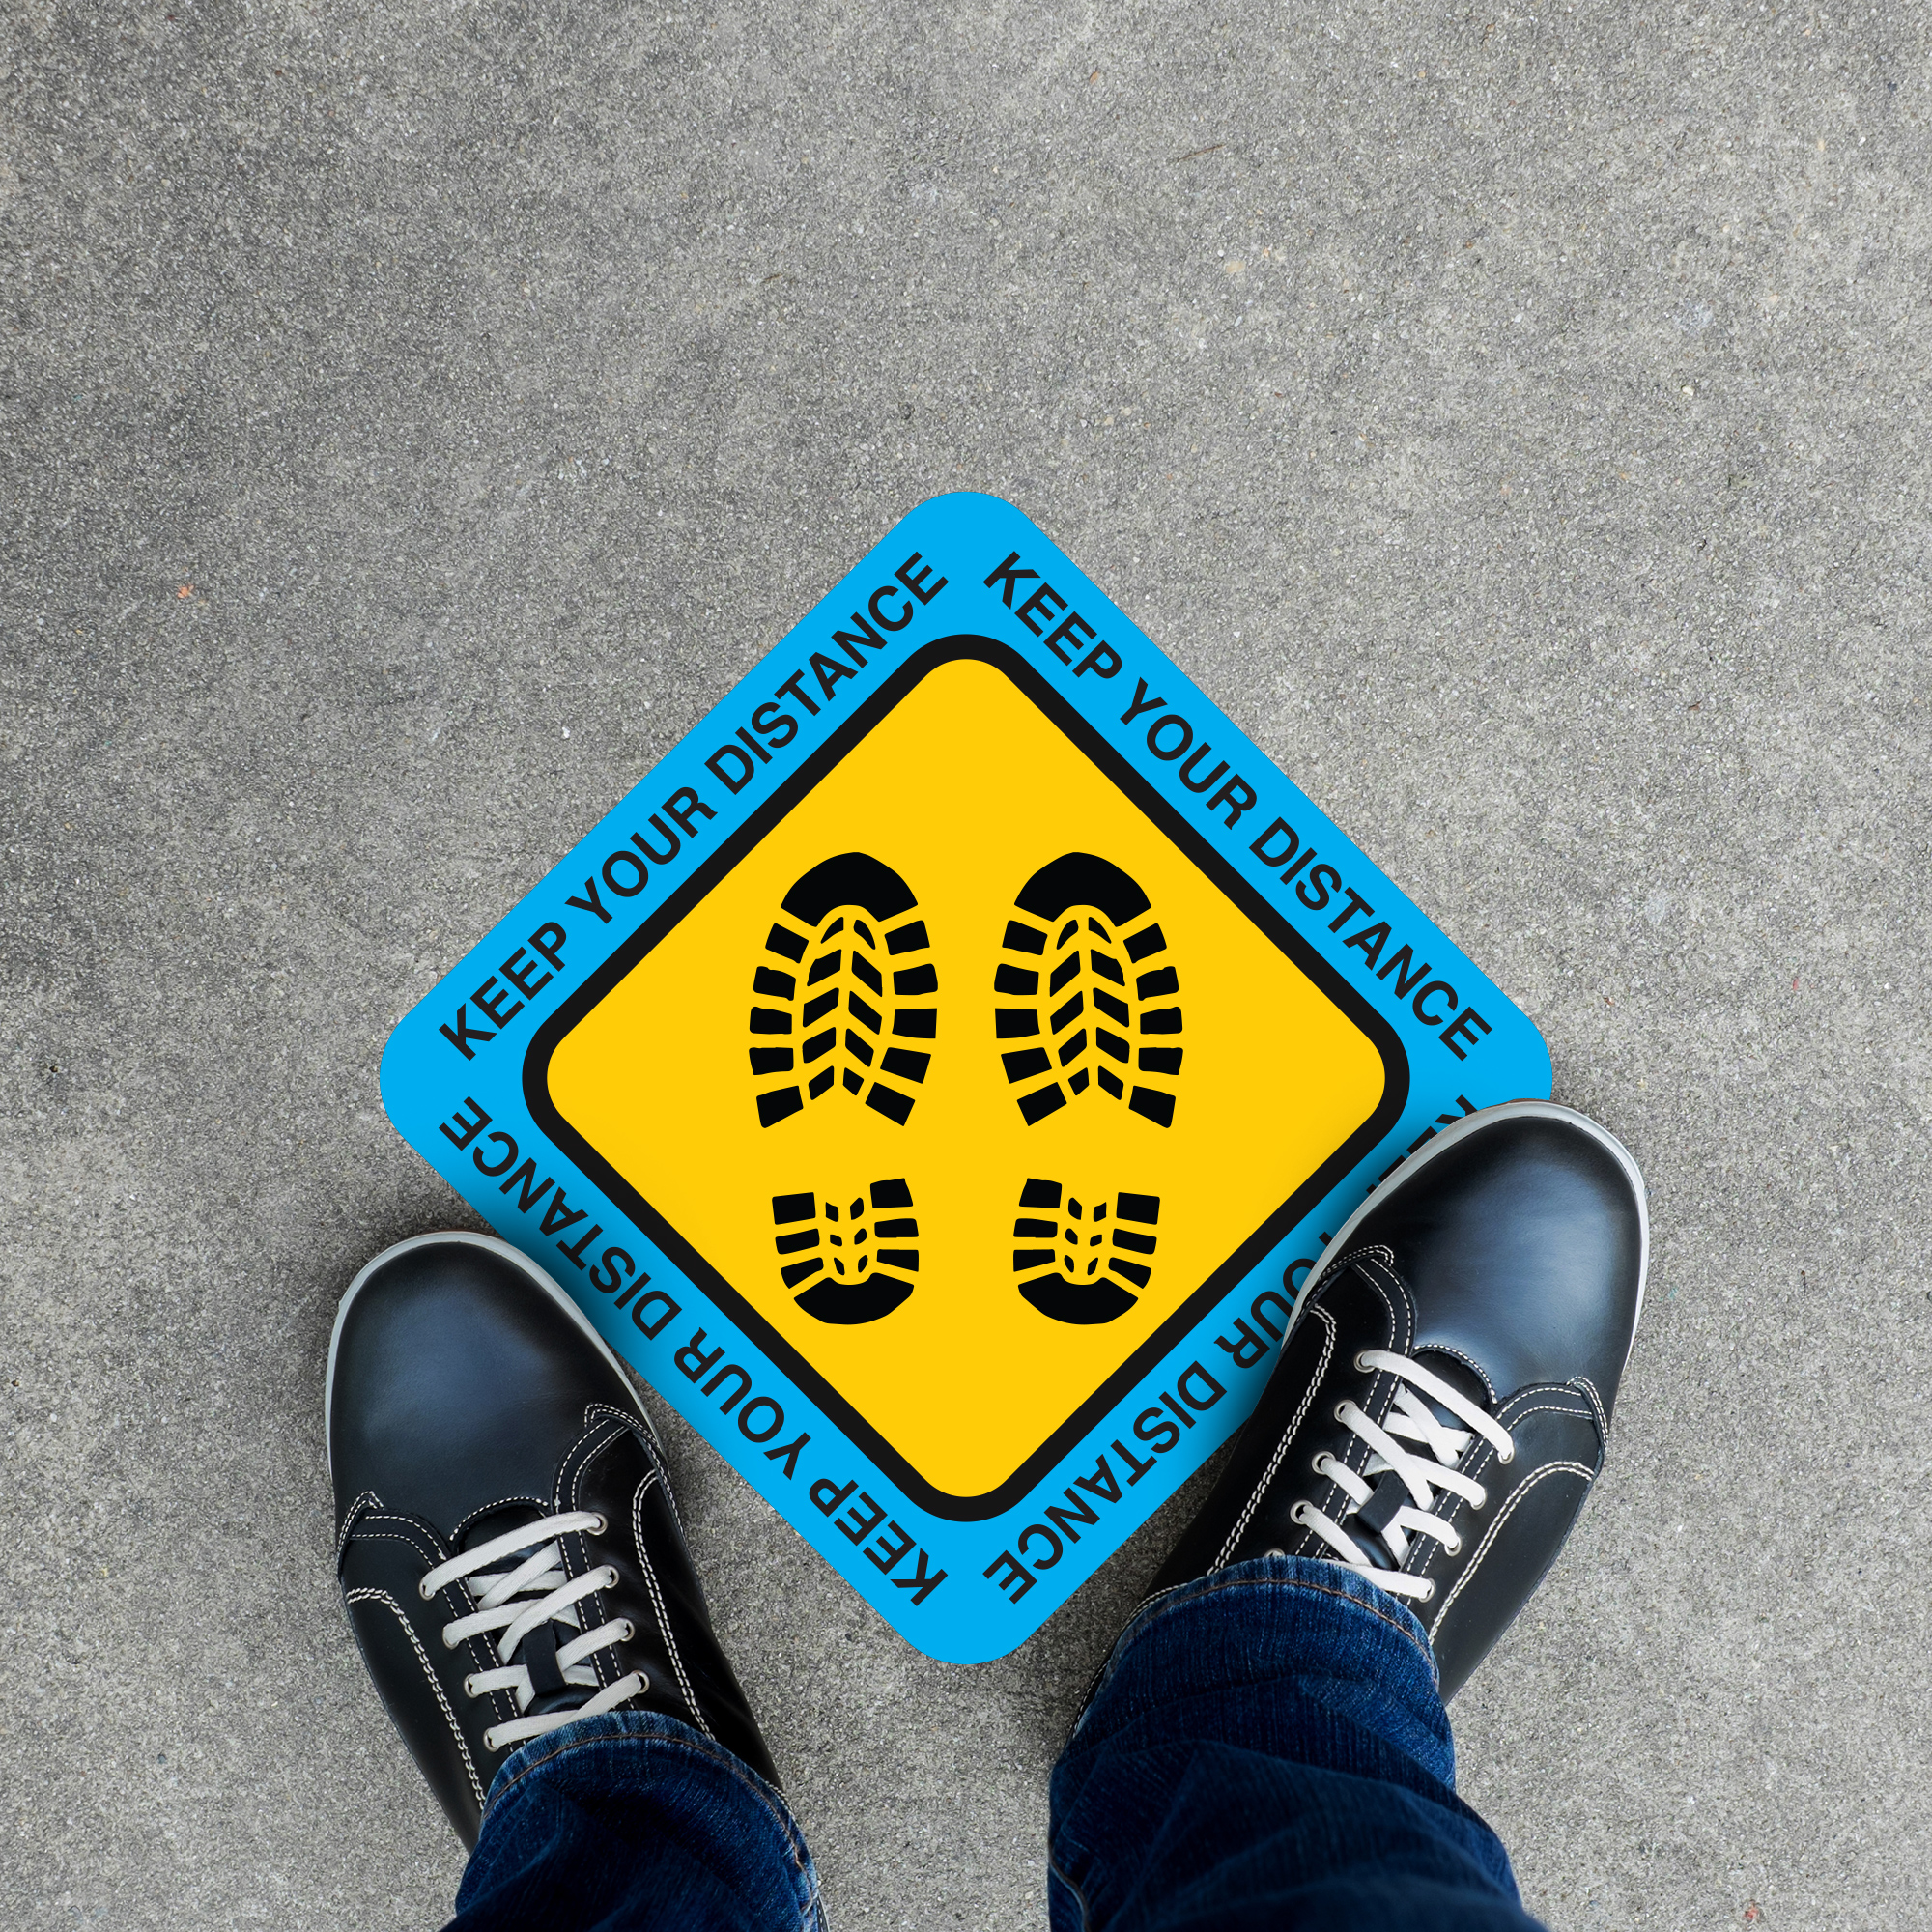 Keep Your Distance Hazard Floor Decal - 12 inch